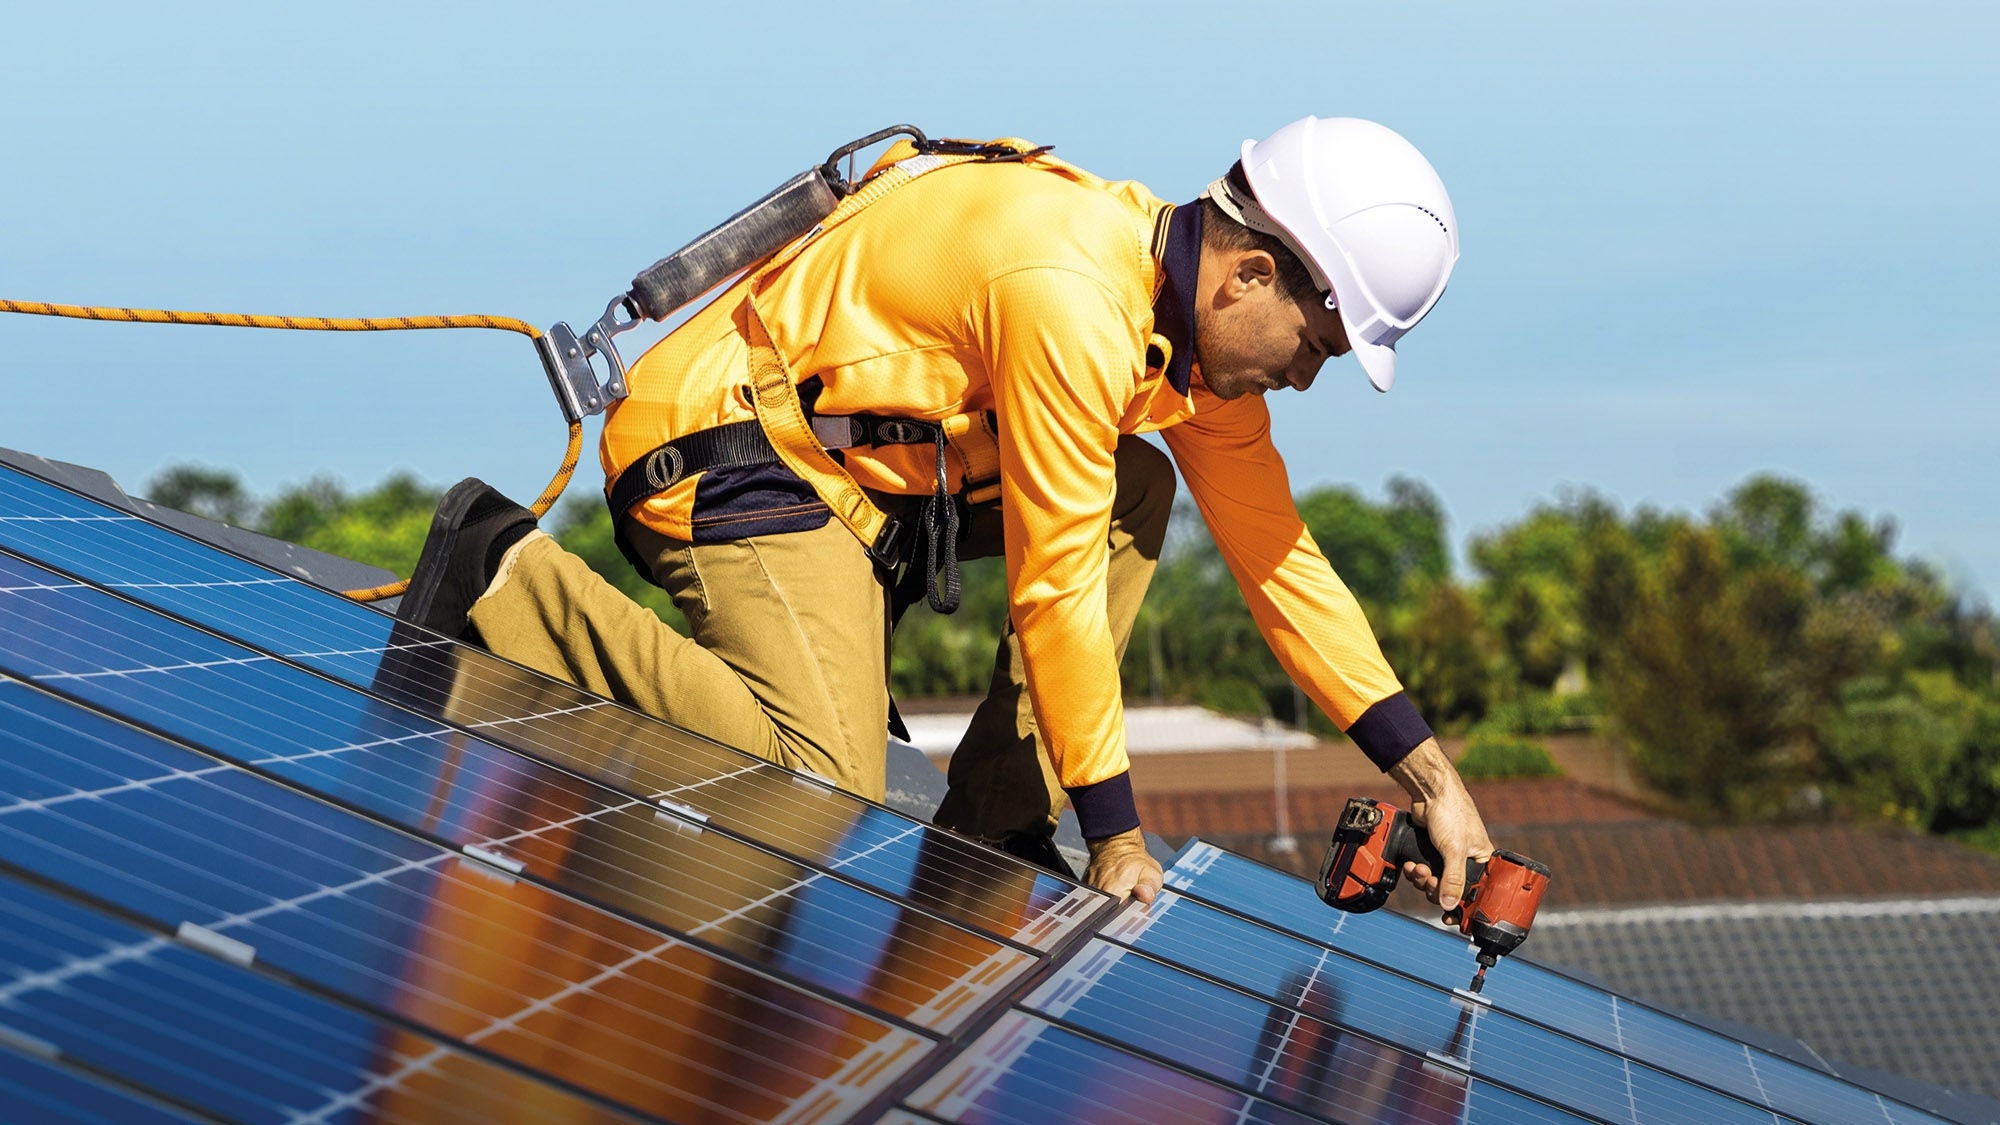 ein gut gesicherter Bauarbeiter mit Helm und Schutzausrüstung montiert Photovoltaikpanels auf einem Dach